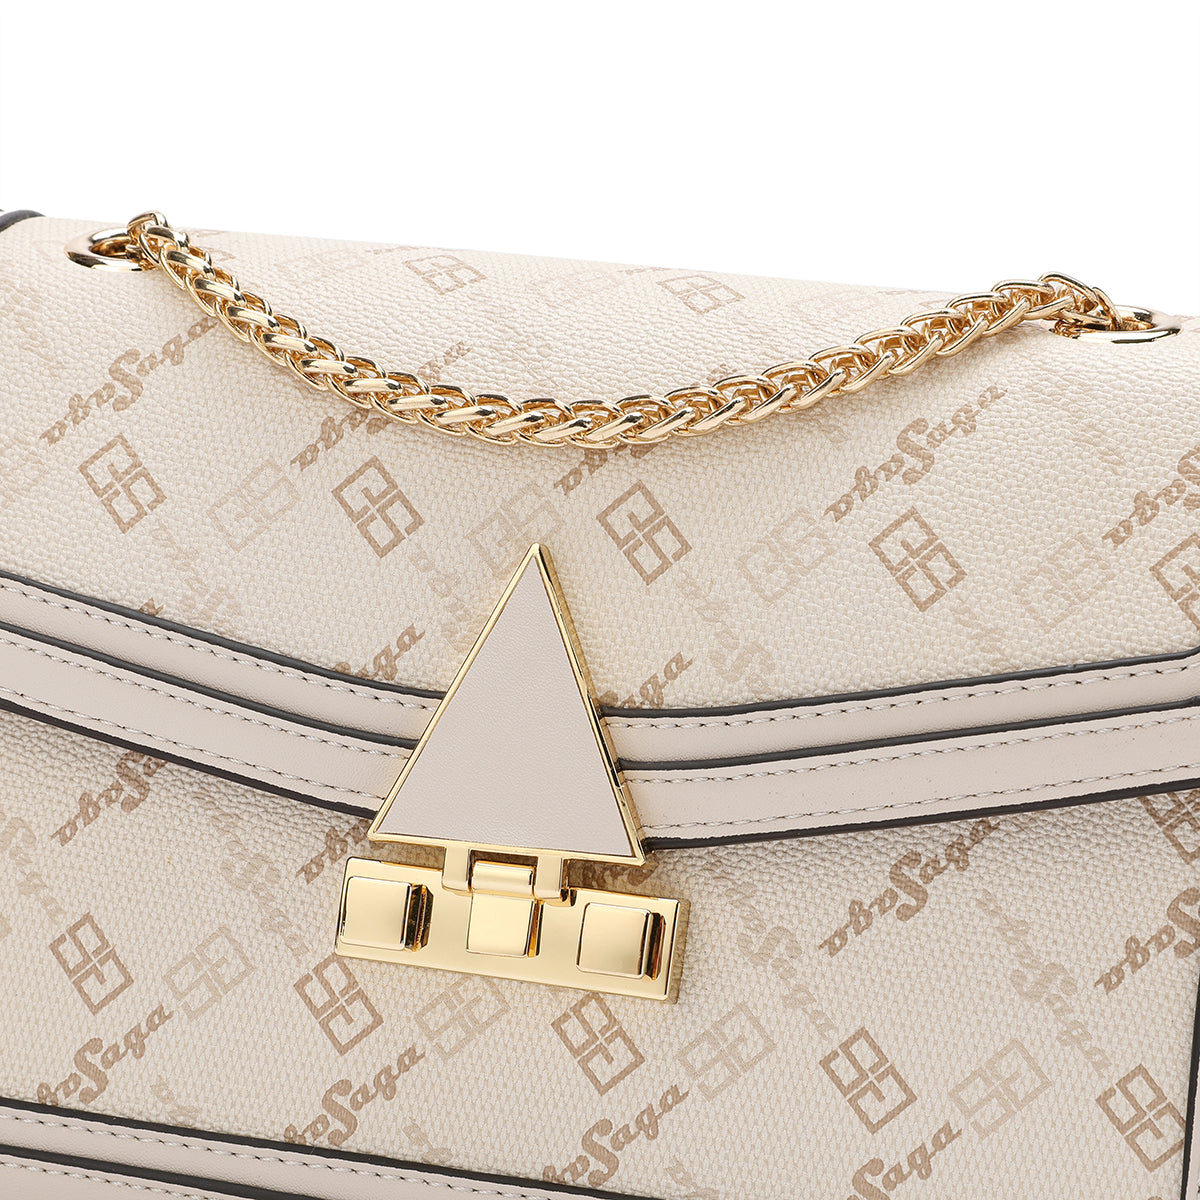 One shoulder bag, elegant design, width 23.5 cm, brown or cream color